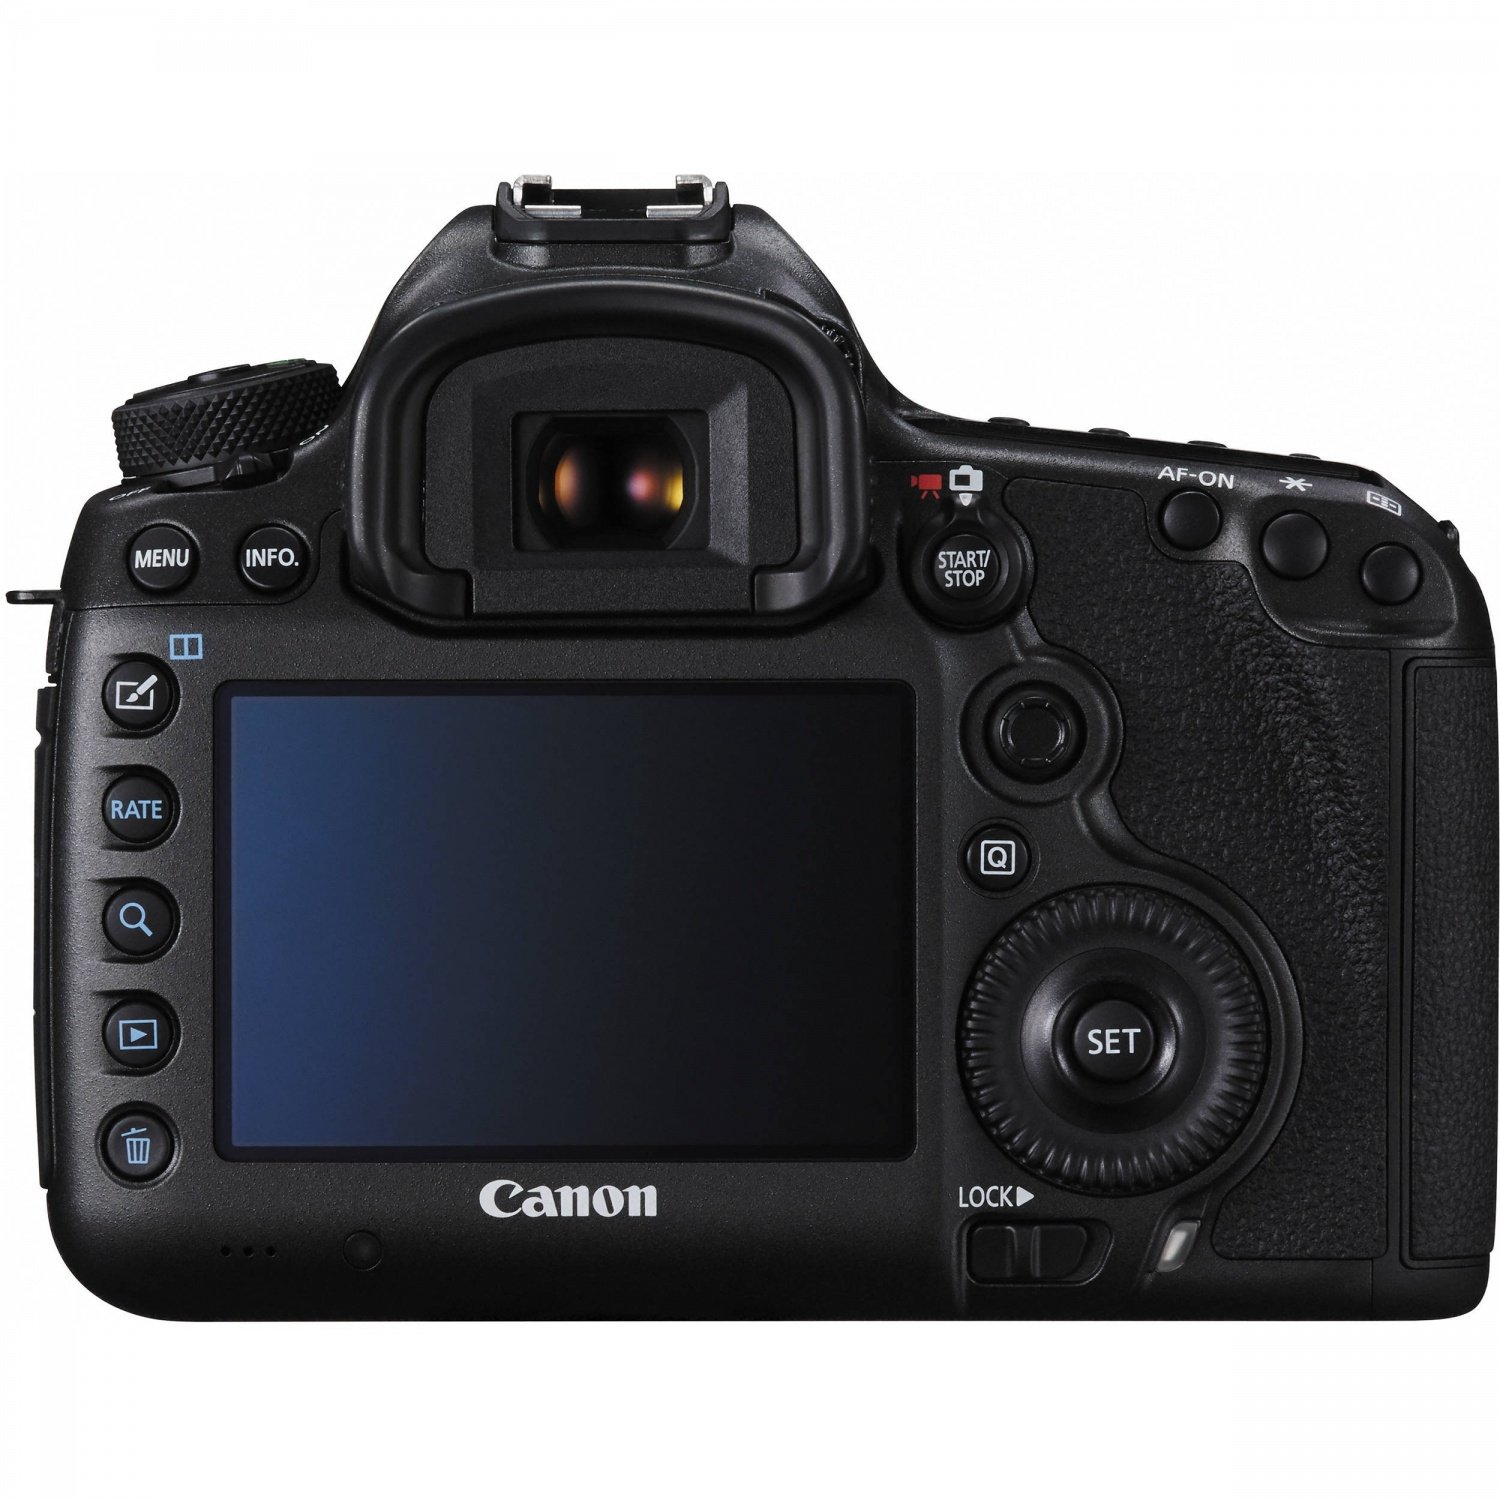 Фотоаппарат CANON EOS 5DS R, вид со стороны пользователя